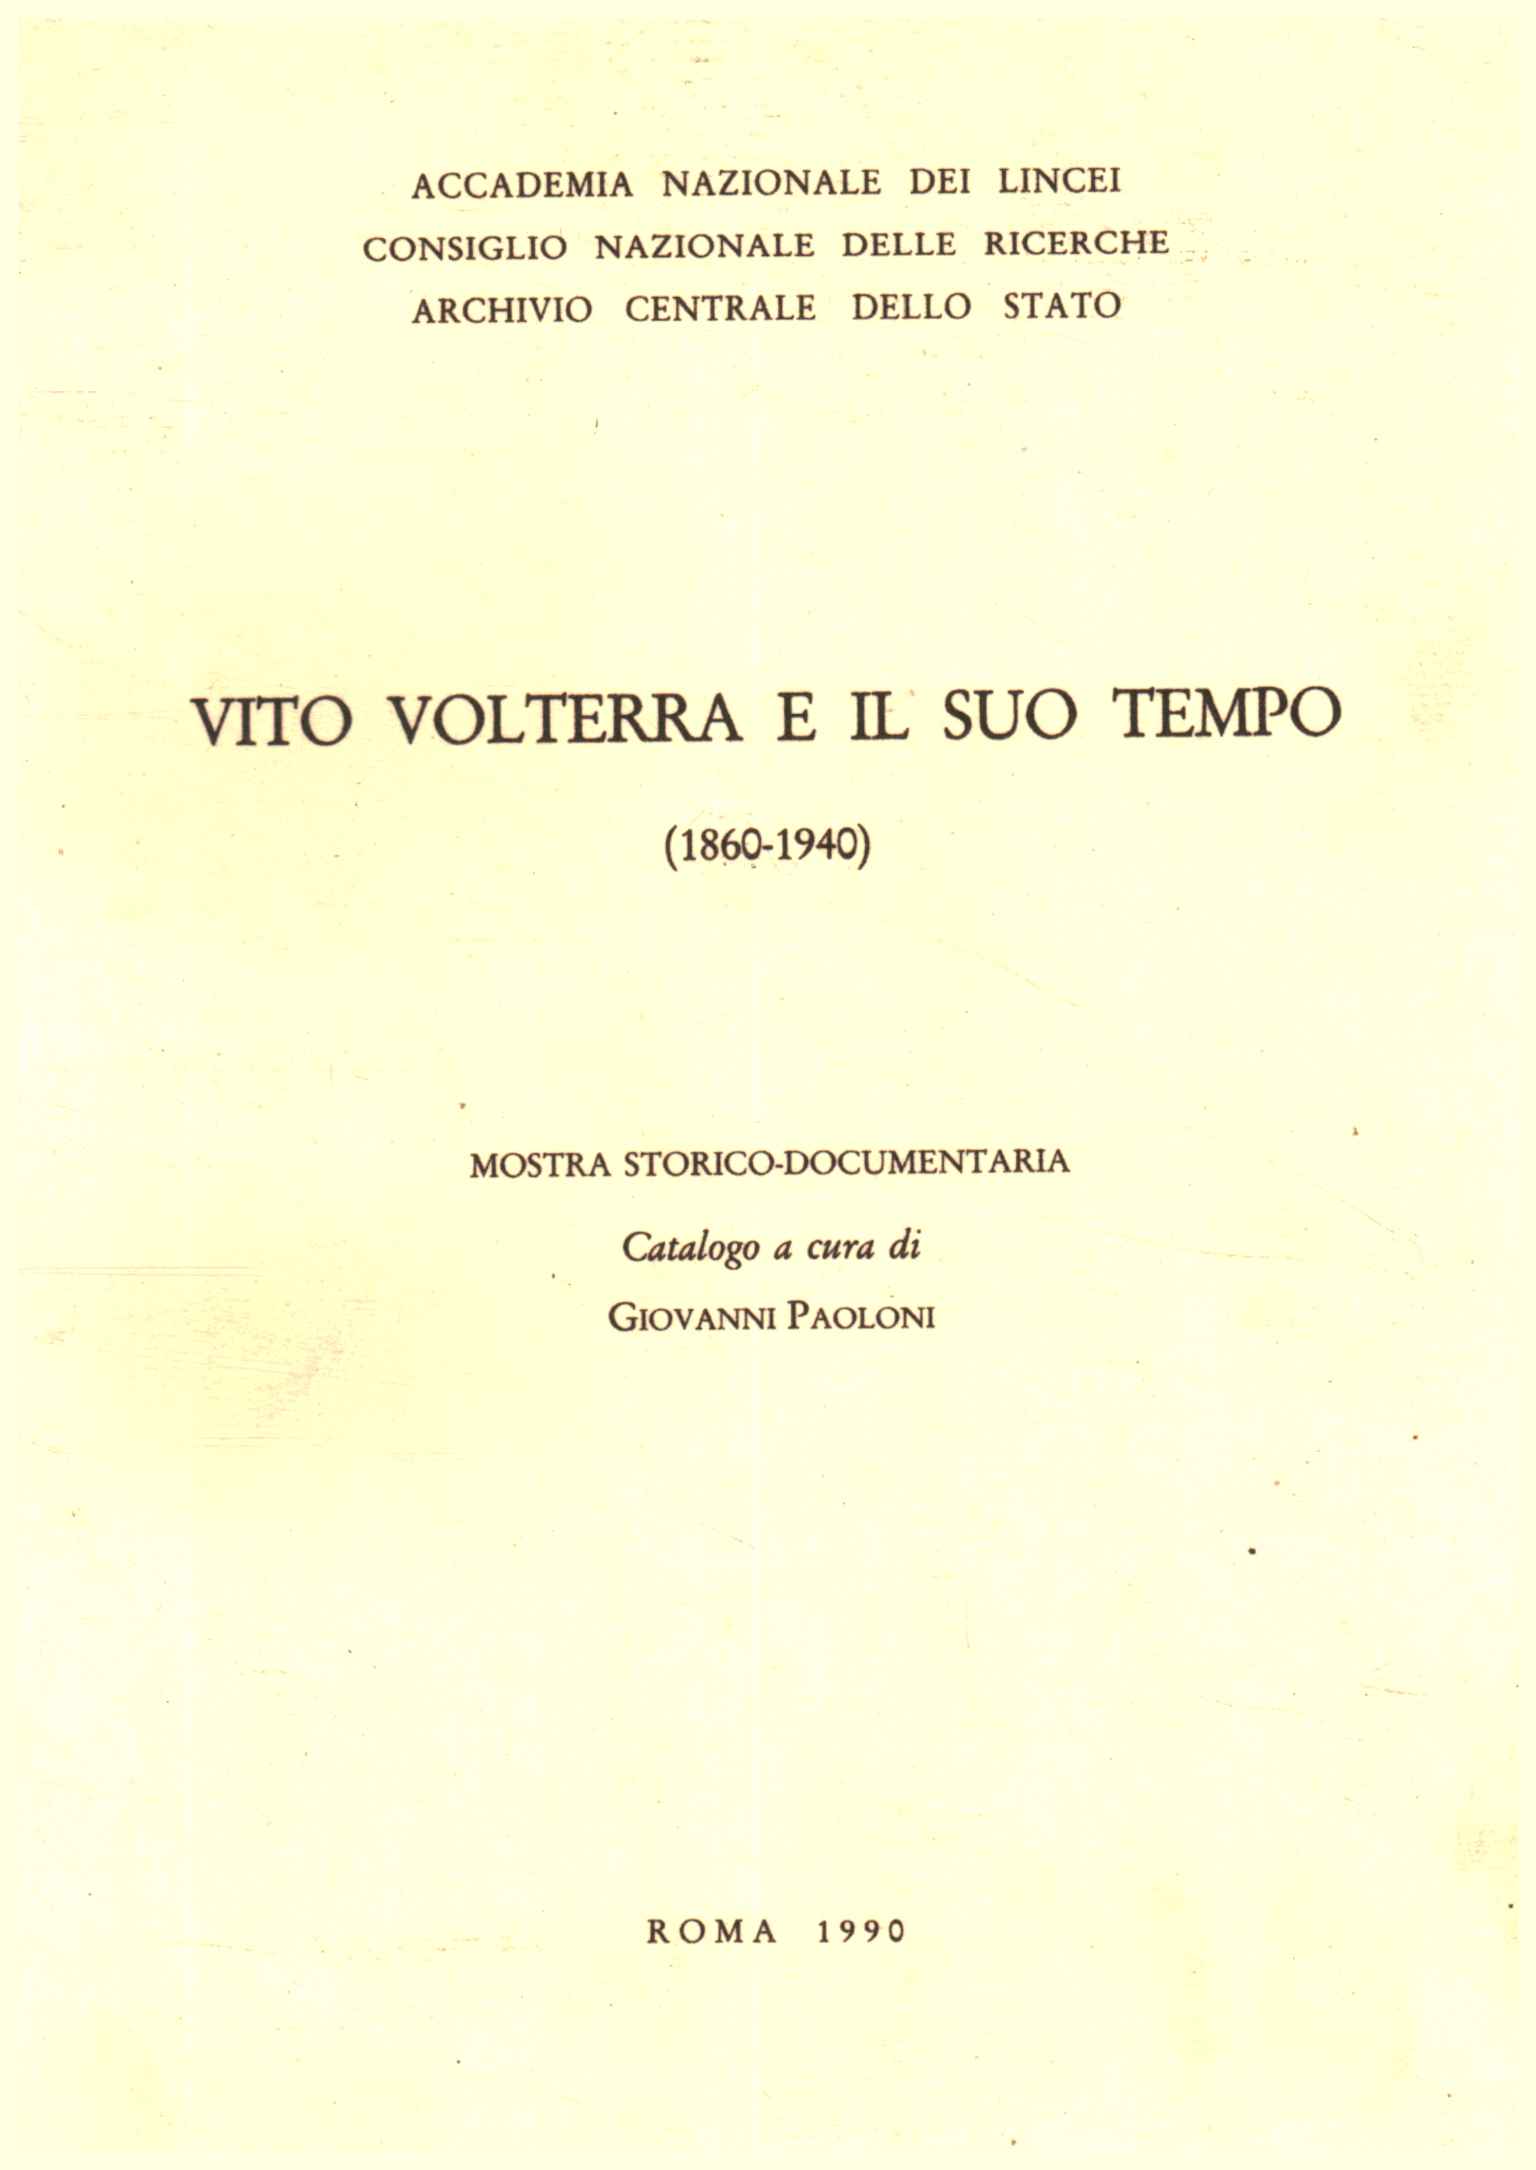 Vito Volterra et son époque (1860-194